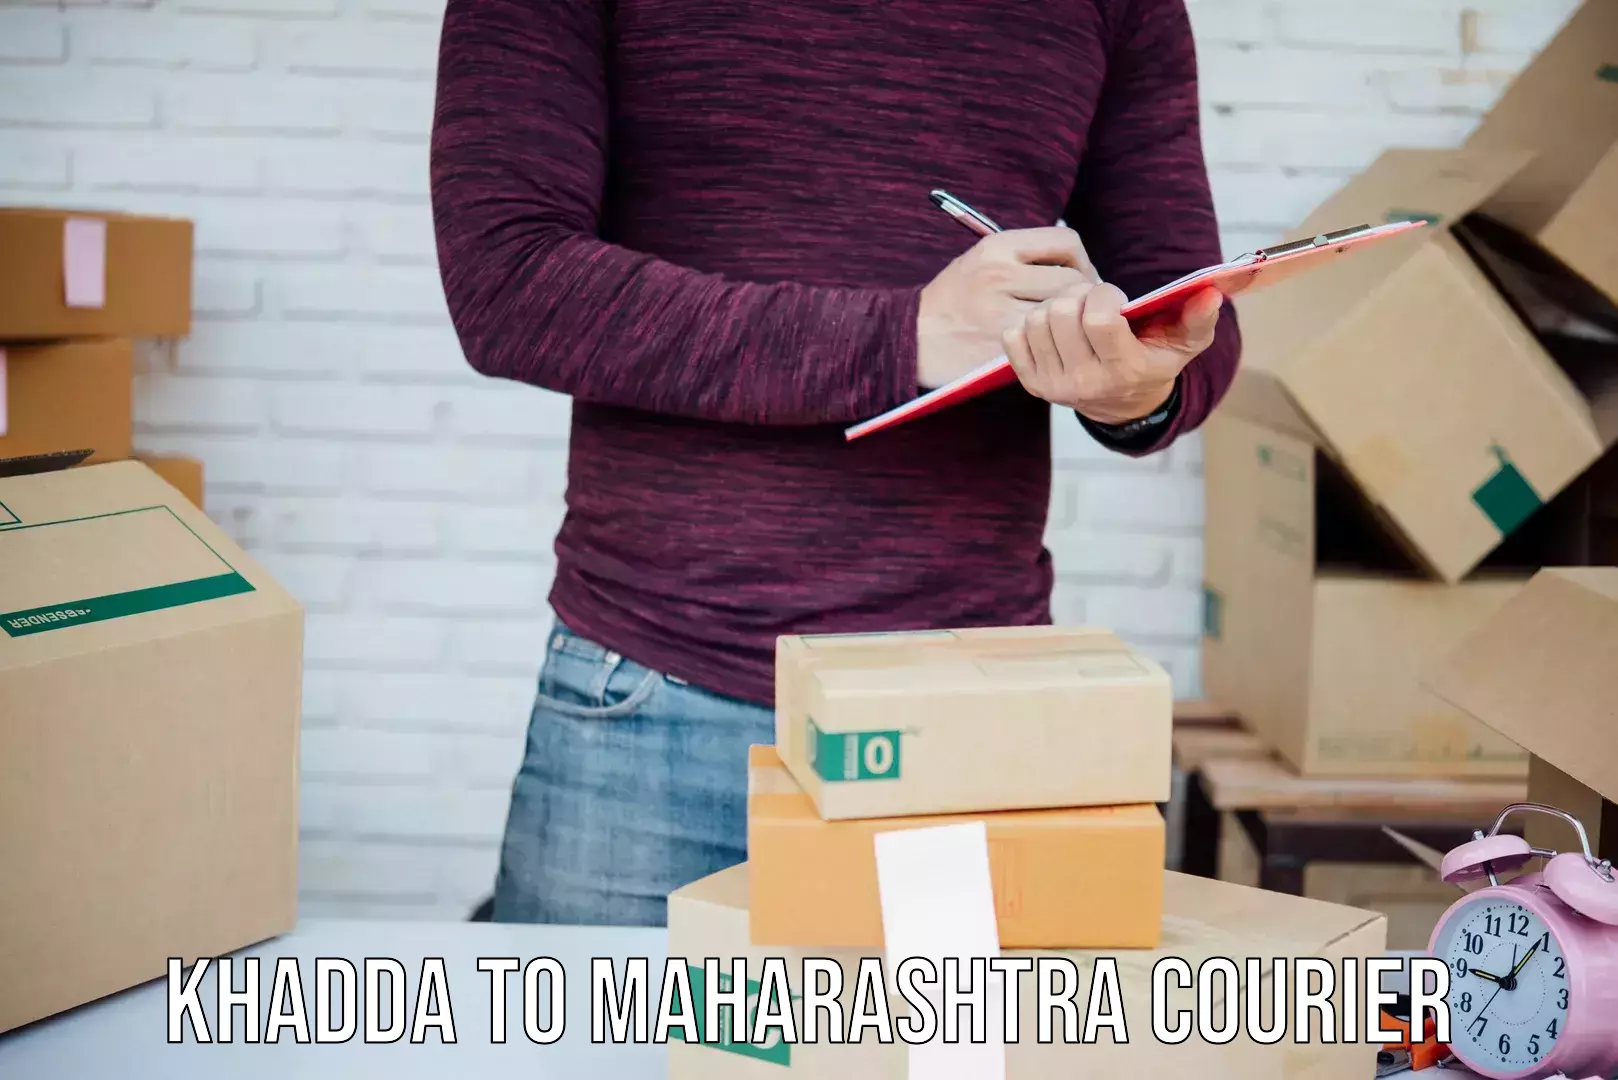 Express logistics service Khadda to Maharashtra